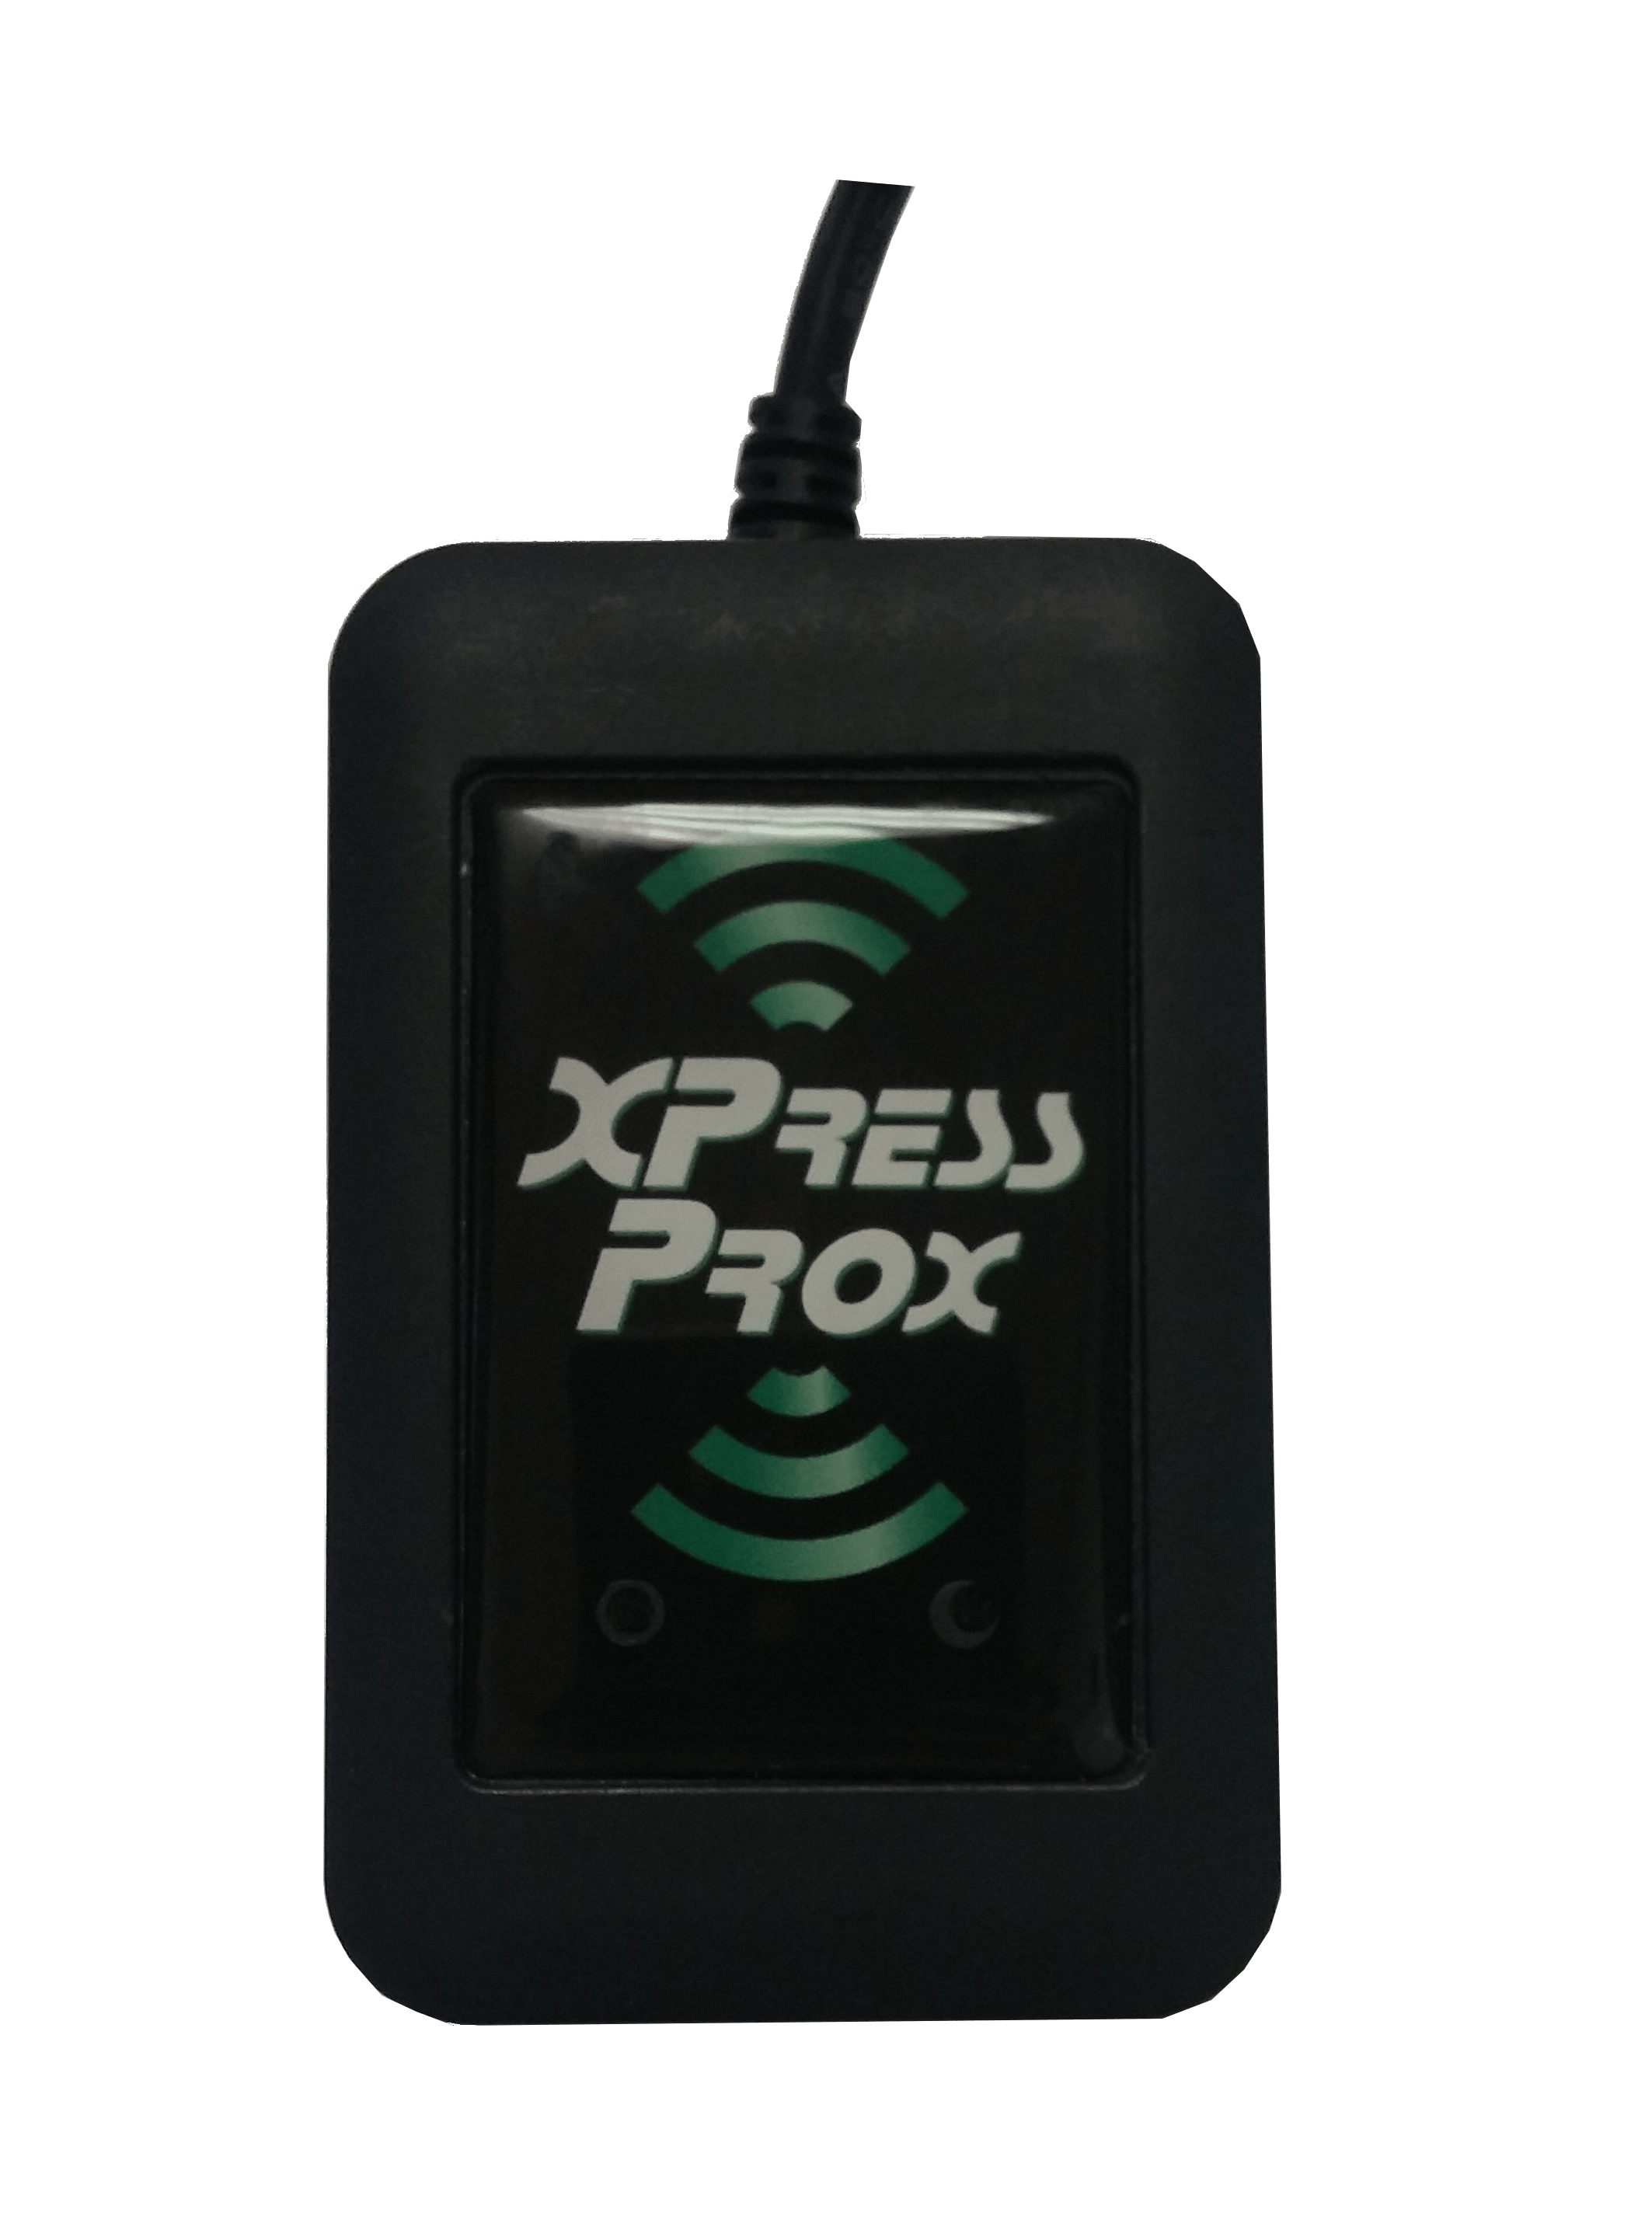 XPressProx Desktop USB-märktillläsare